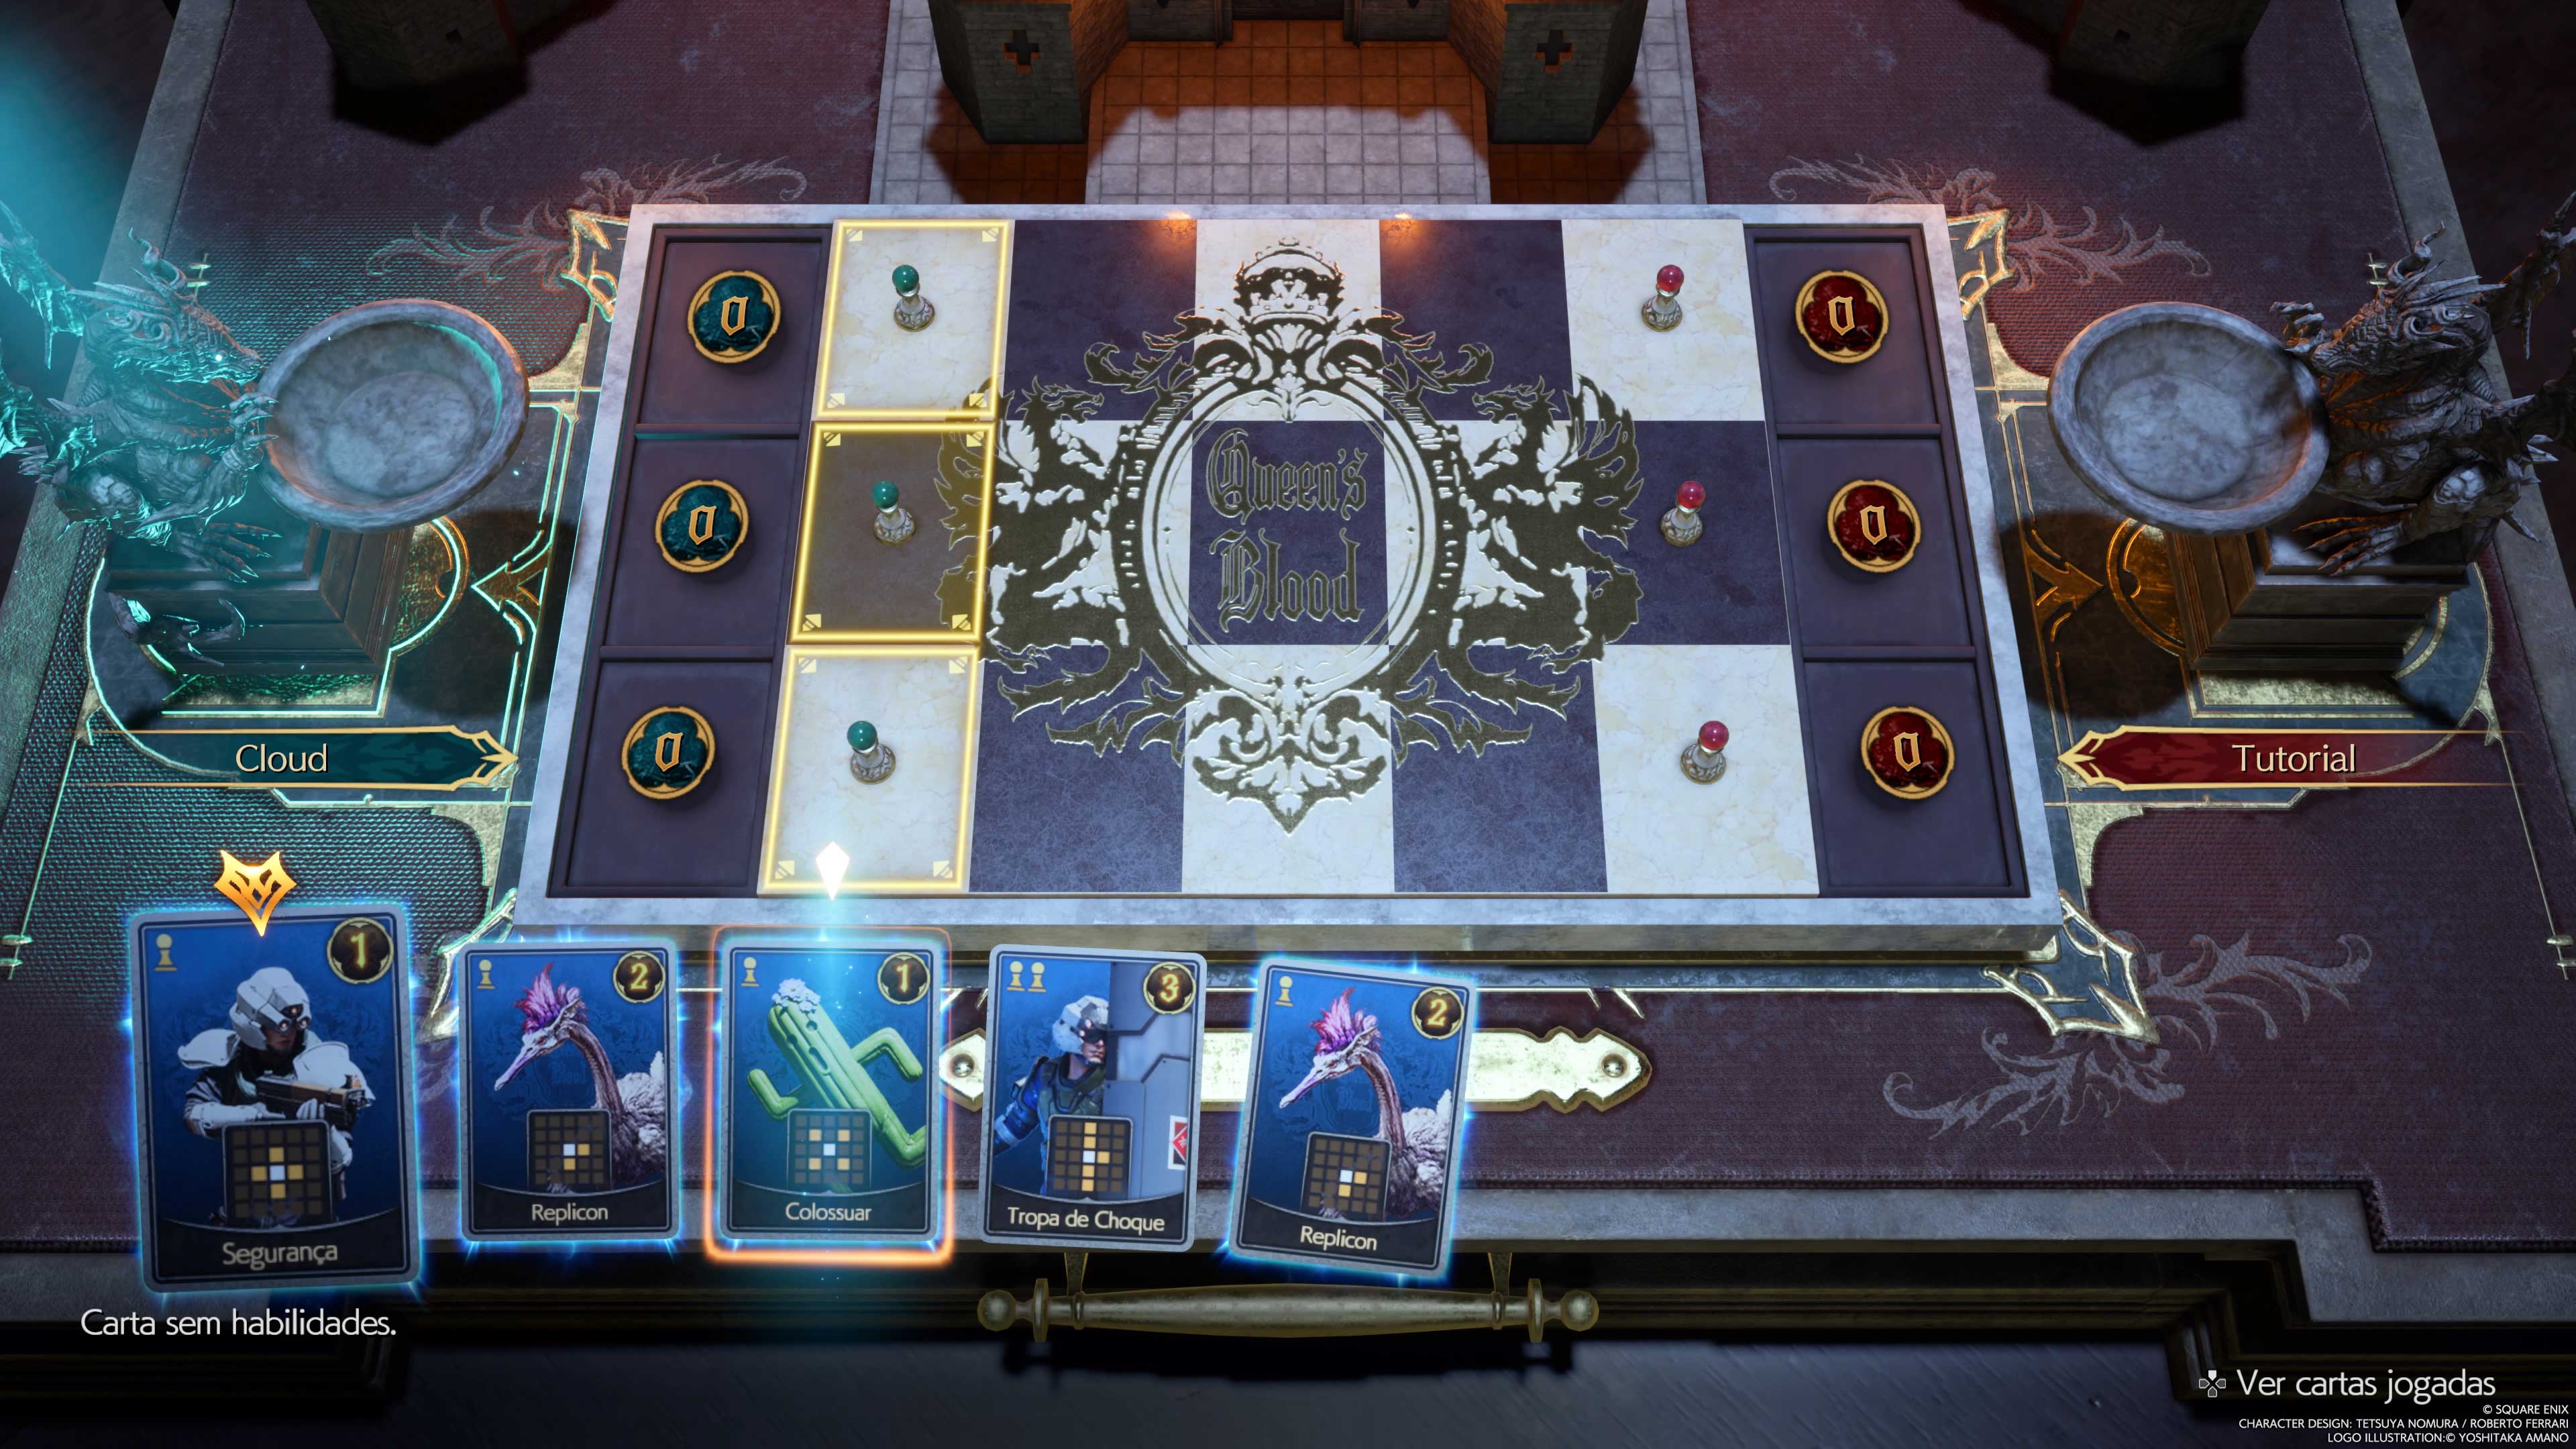 Descrição da Imagem: Jogo de cartas dentro do game